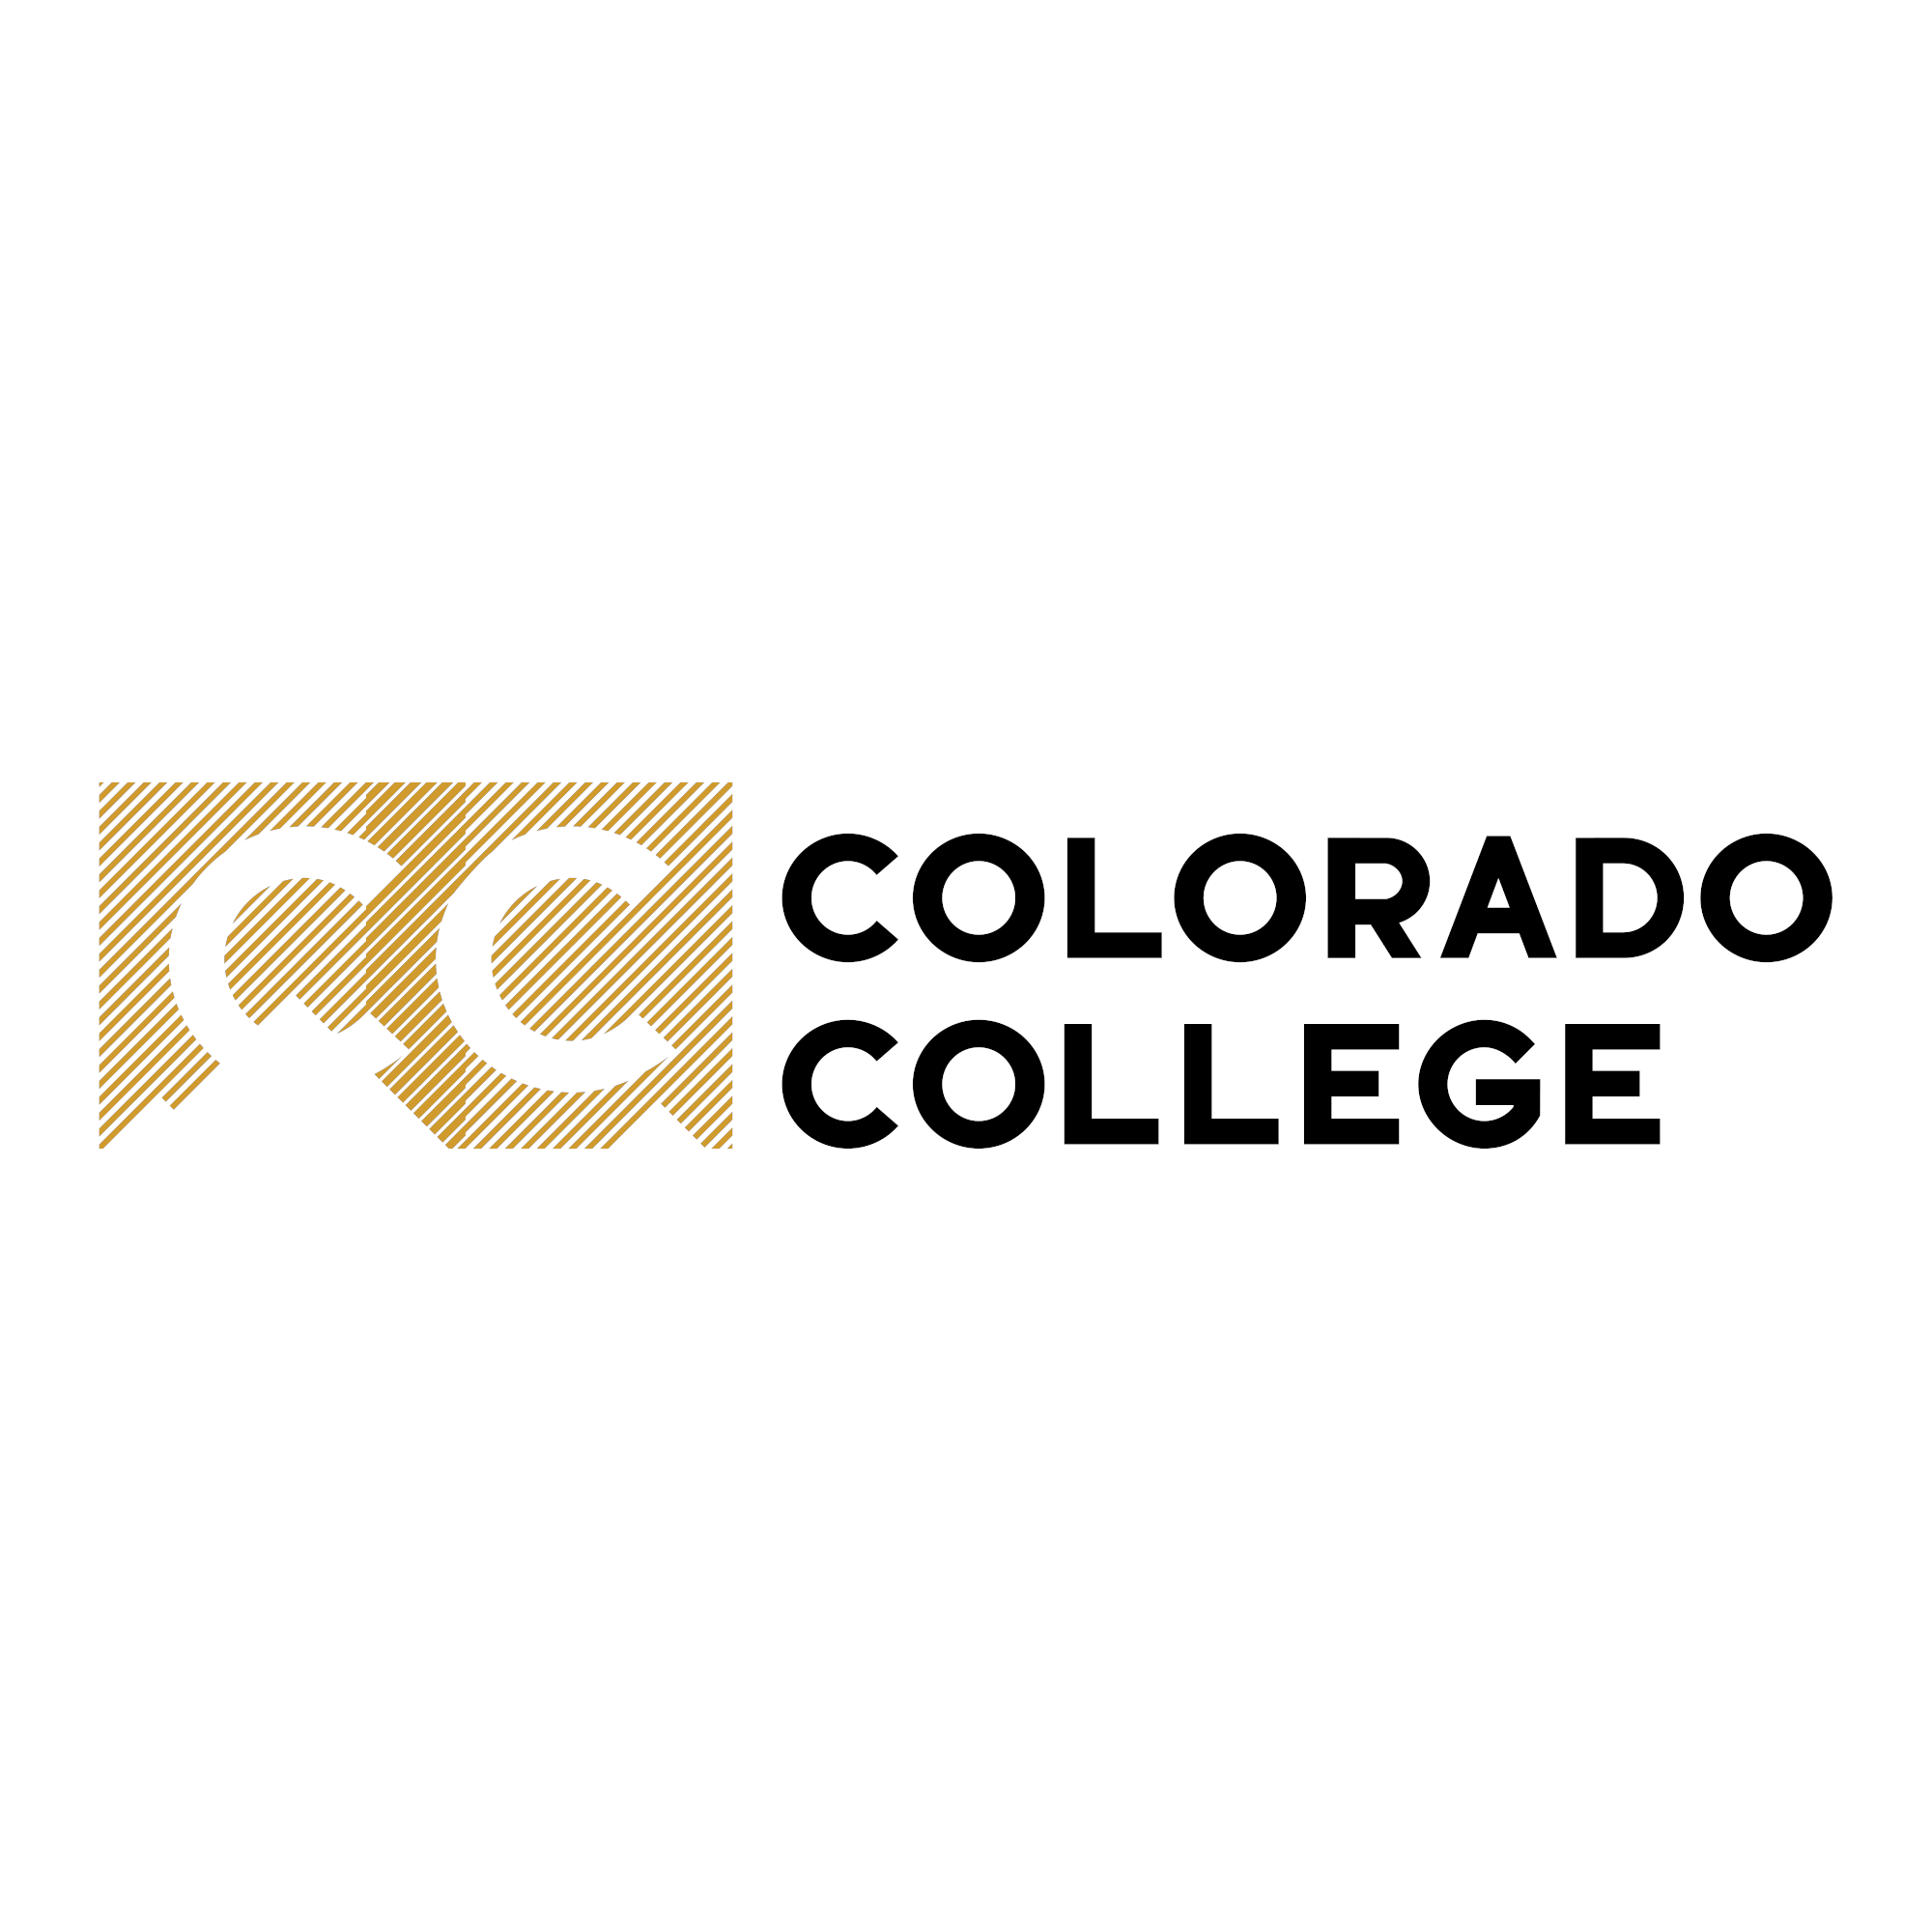 Colorado College logo